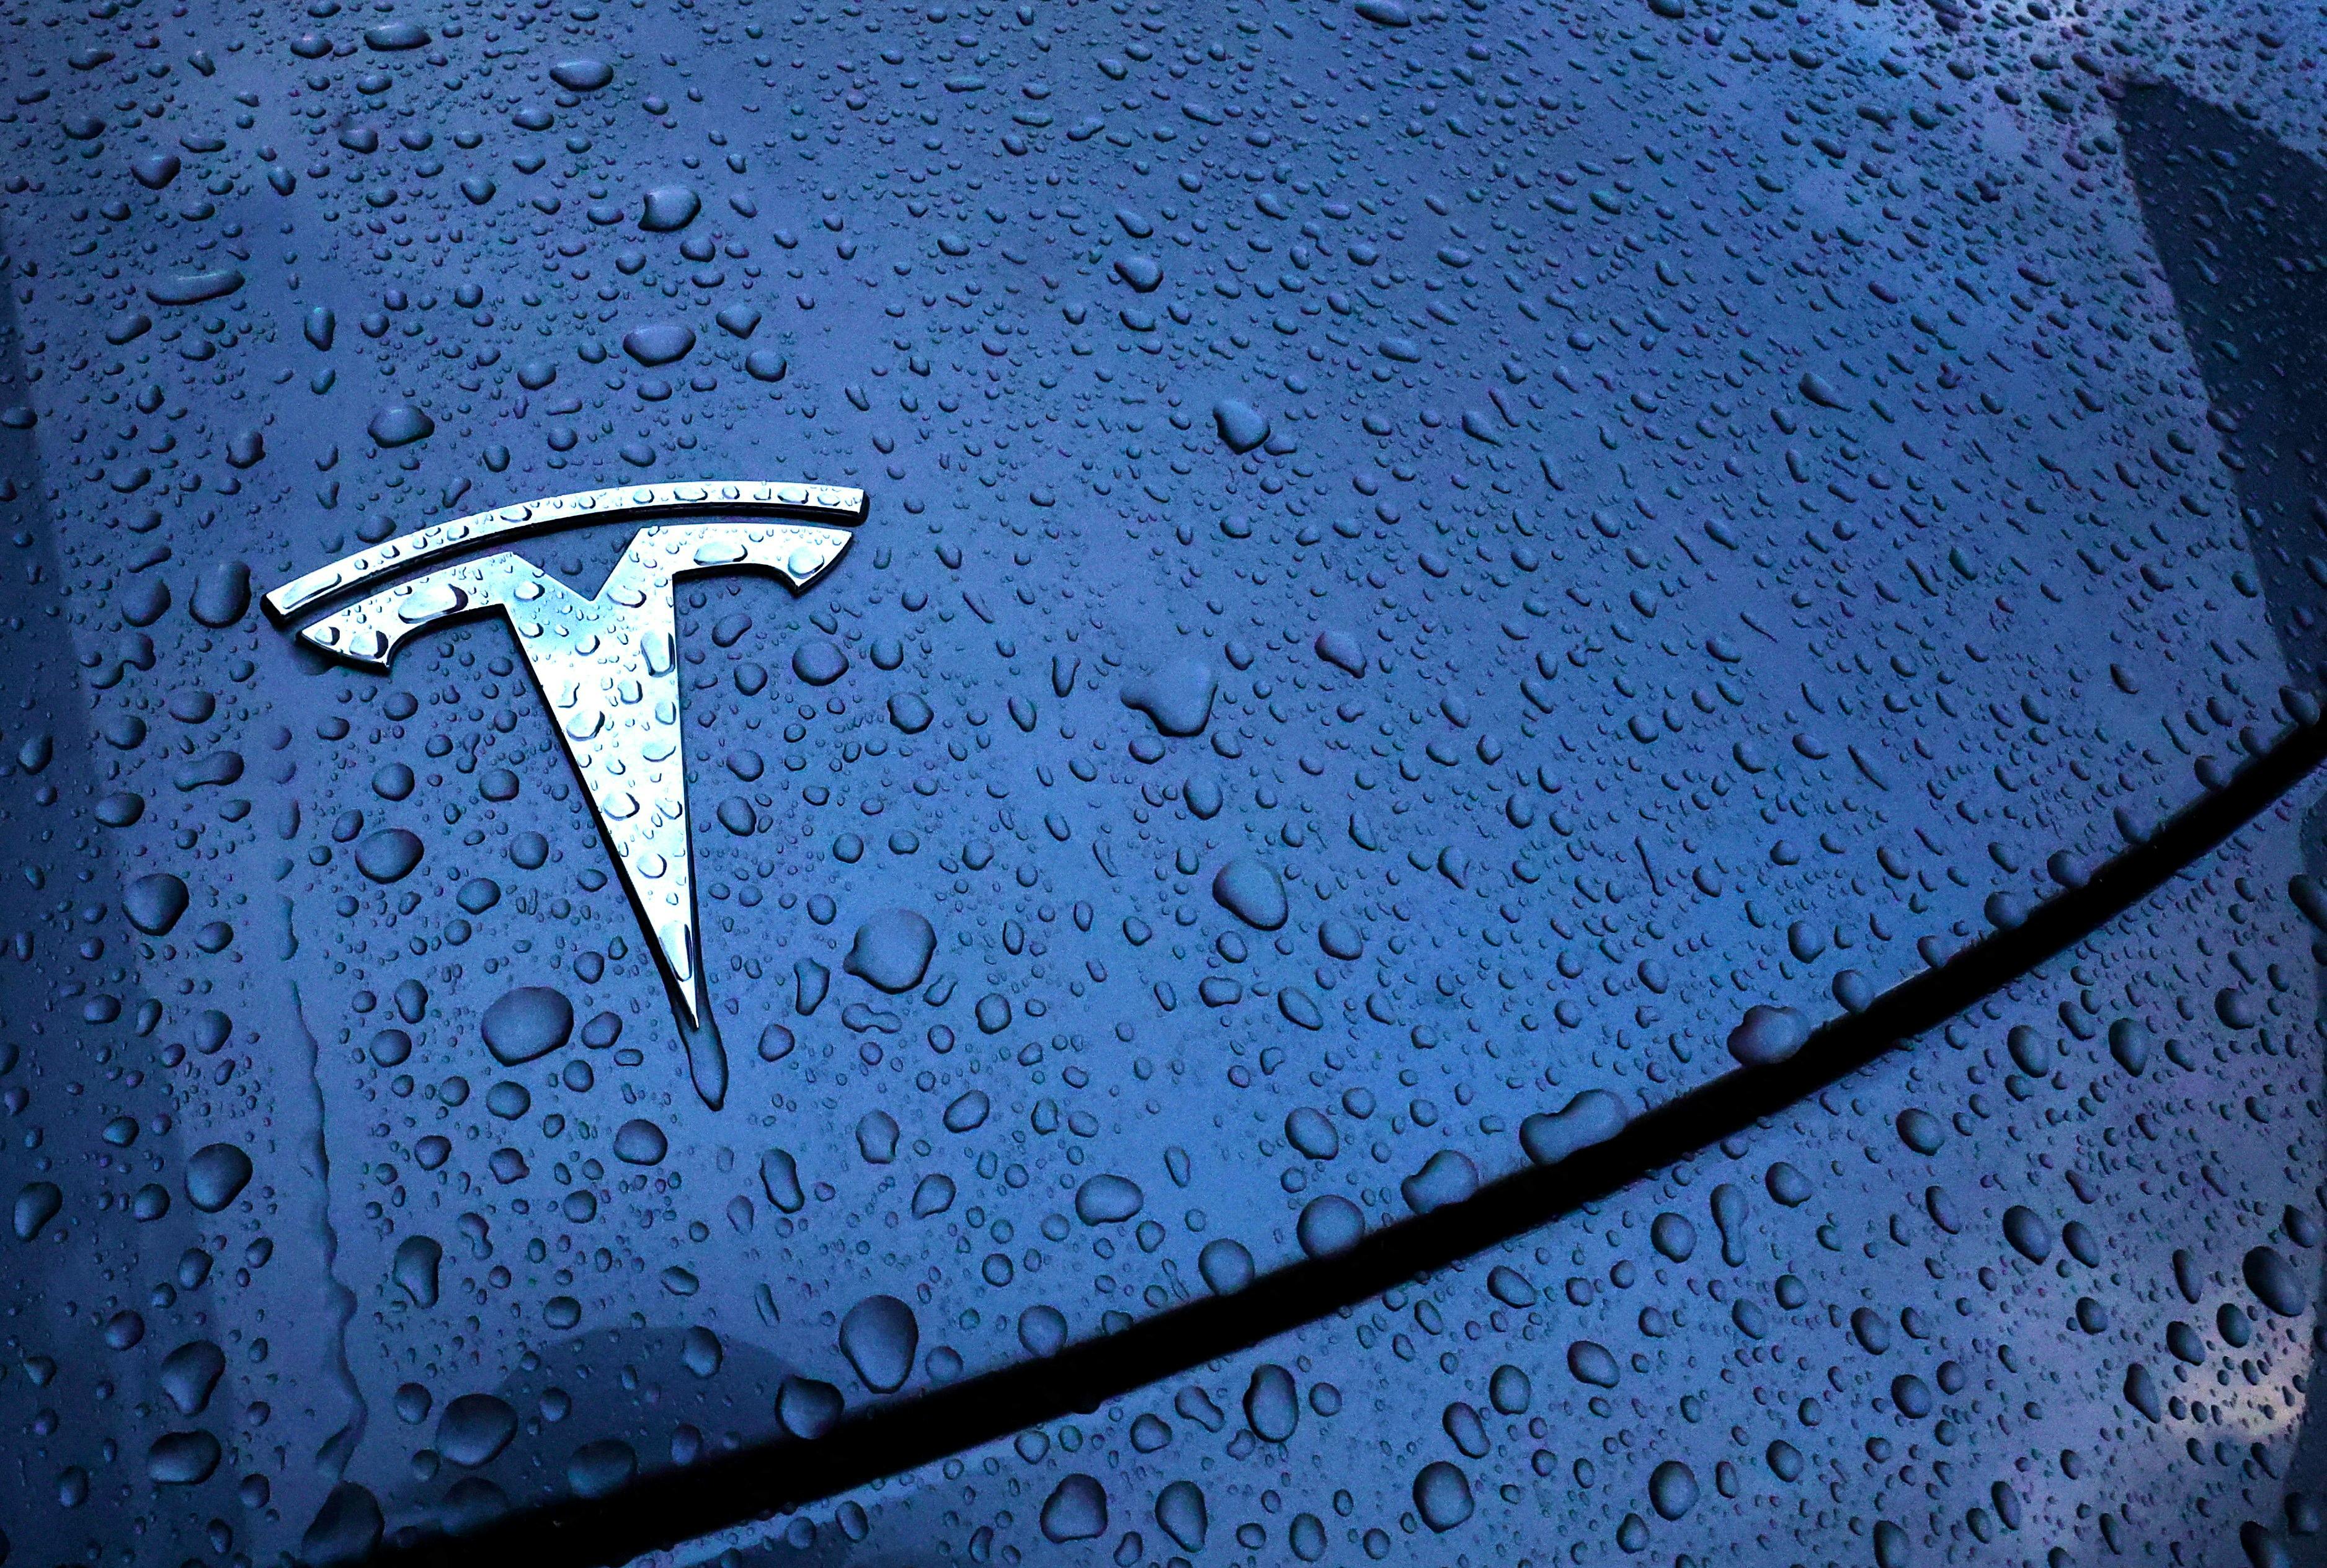 Tesla's Cybertruck feels like an SUV; price, lower driving range